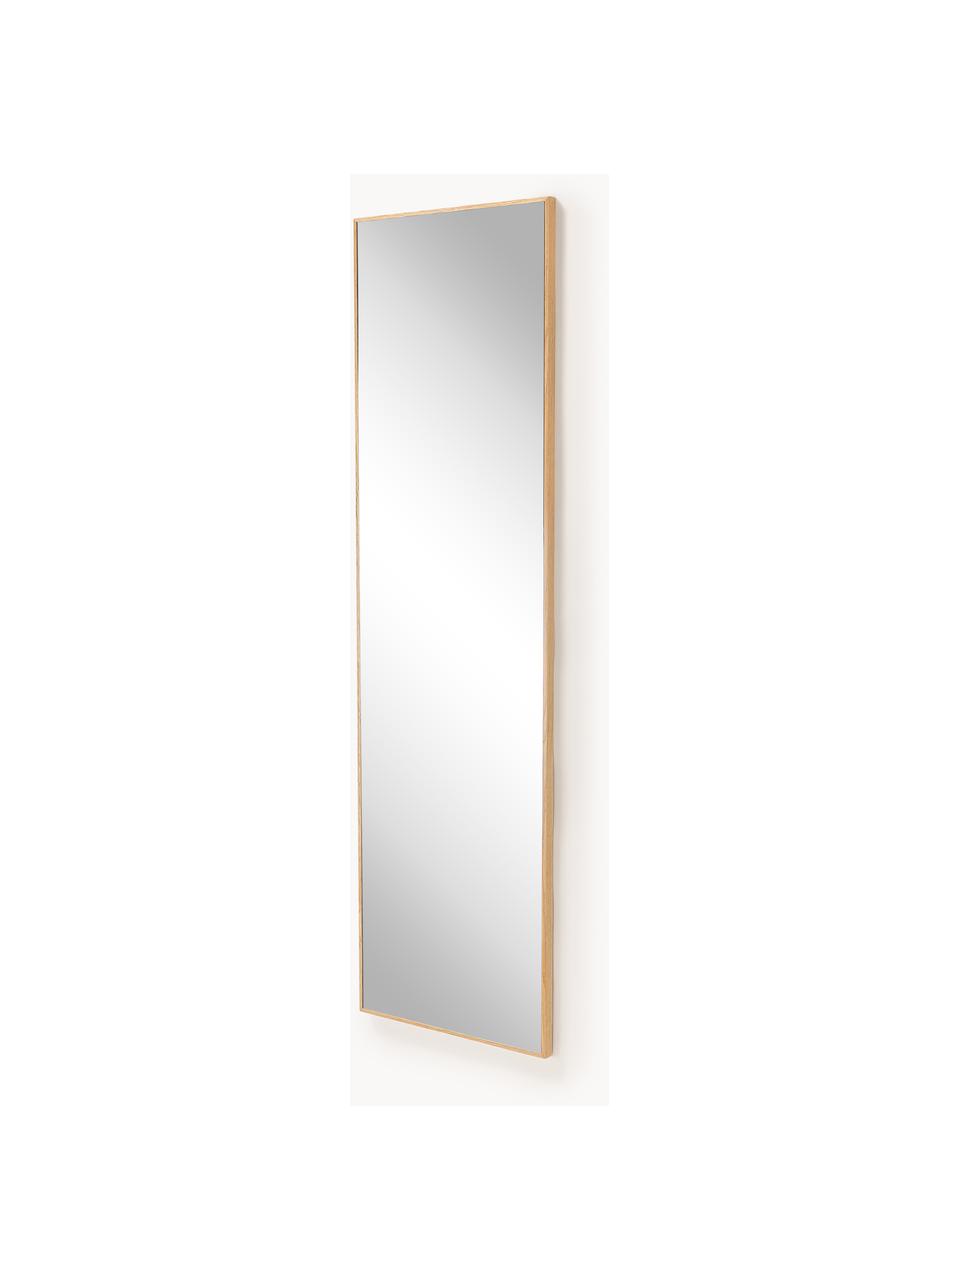 Wandspiegel Avery mit Eichenholzrahmen, Rahmen: Eichenholz, Spiegelfläche: Spiegelglas Dieses Produk, Eichenholz, B 40 x H 140 cm